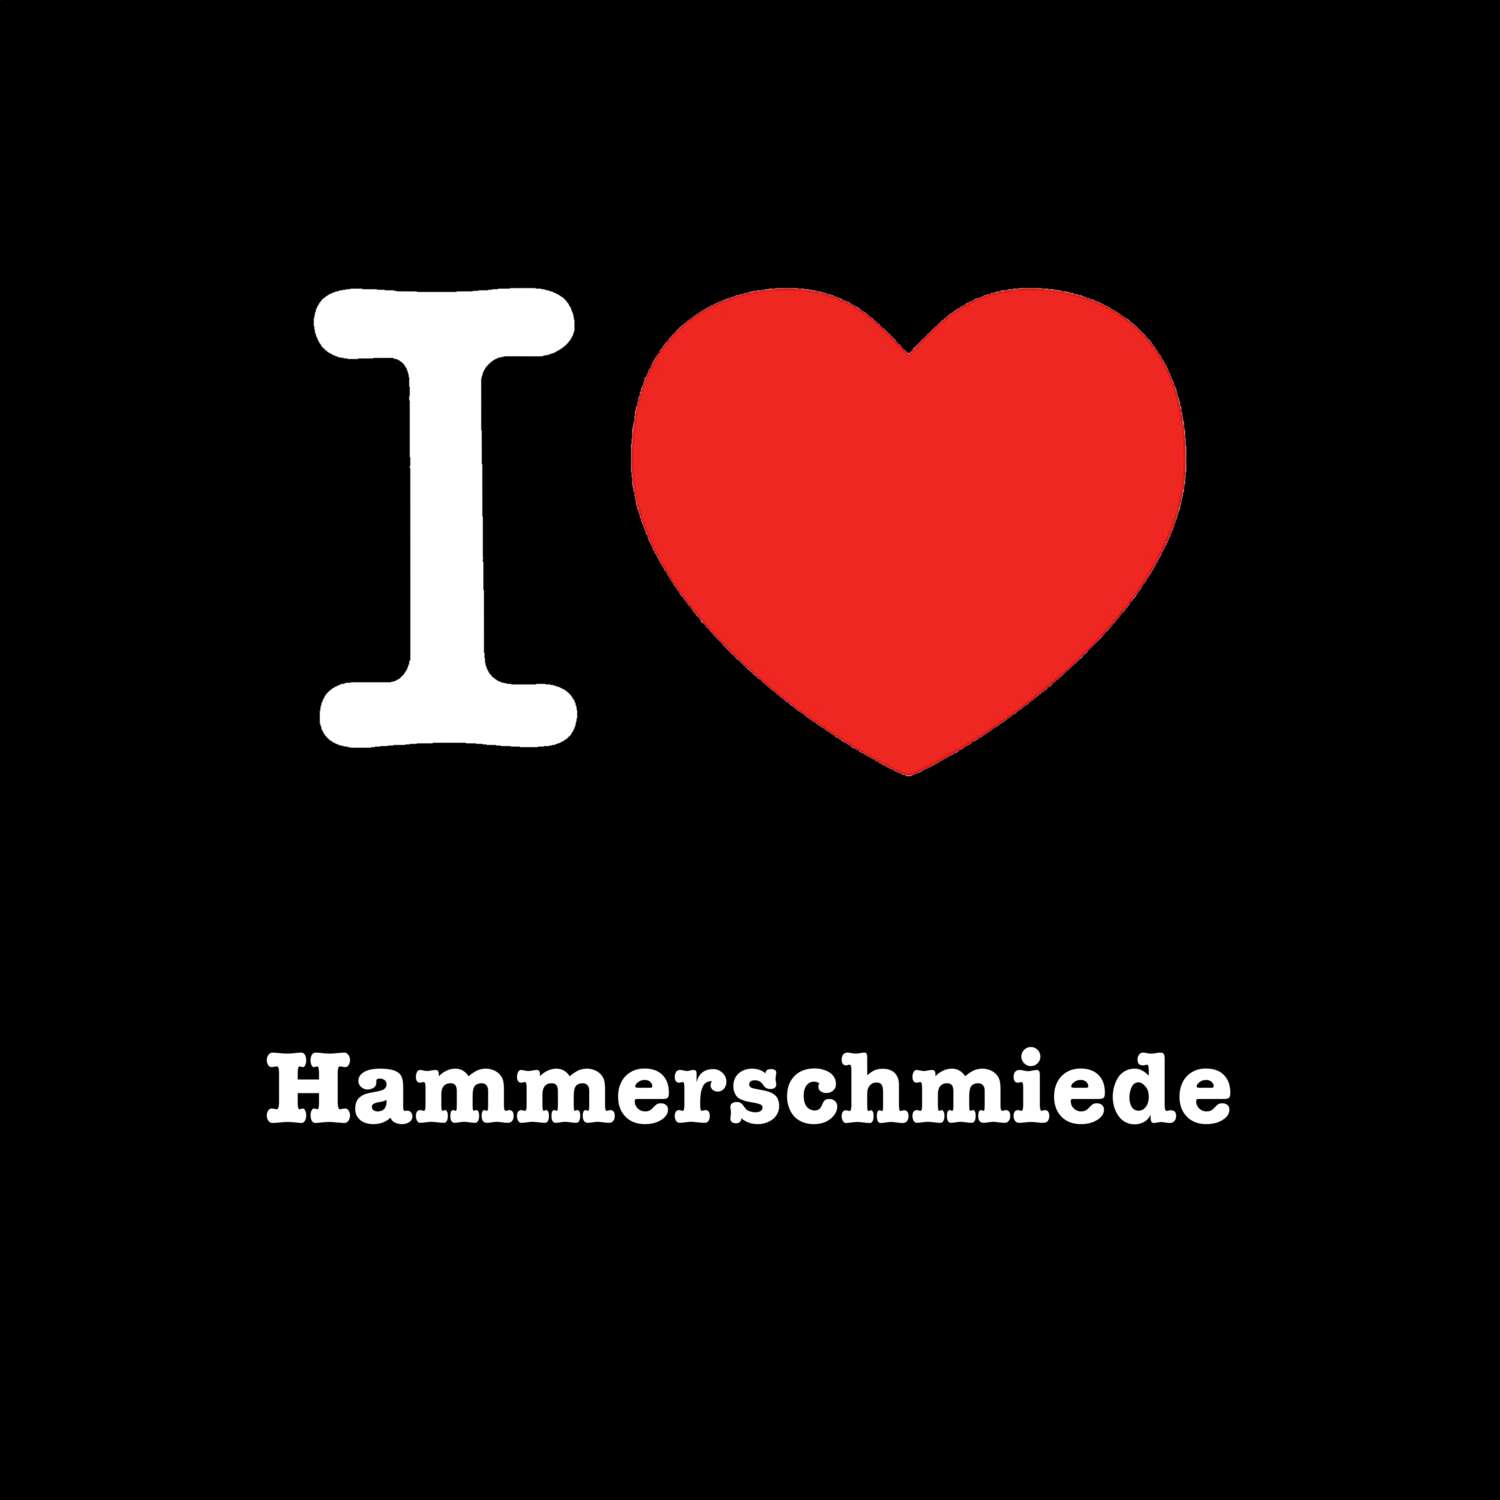 Hammerschmiede T-Shirt »I love«